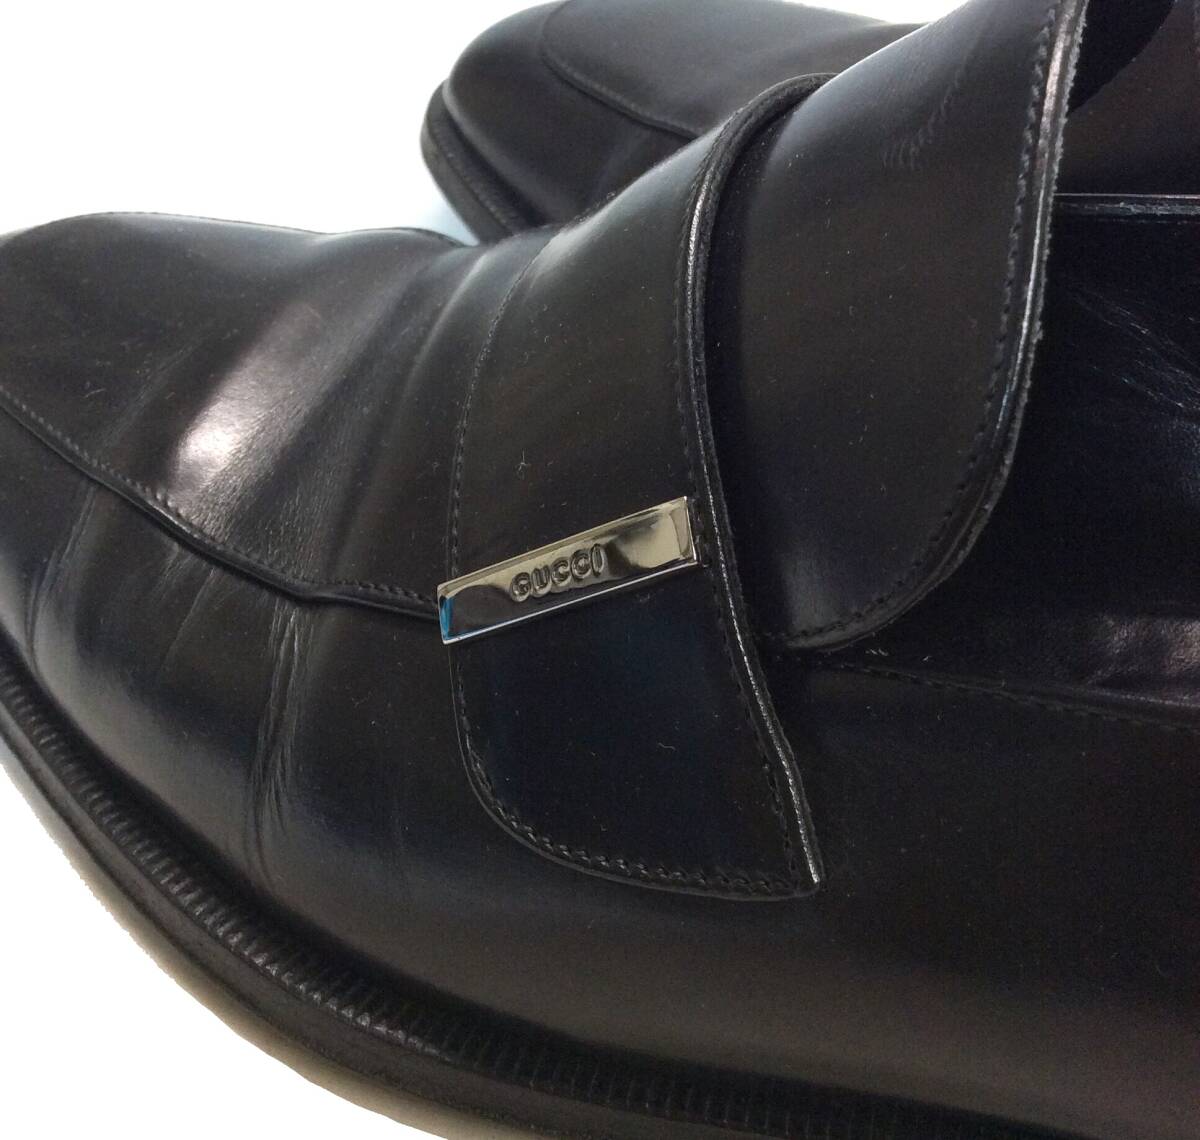 GUCCI Gucci ITALY производства Loafer бизнес обувь кожа обувь кожа обувь черный чёрный мужской 41.5E (ma)